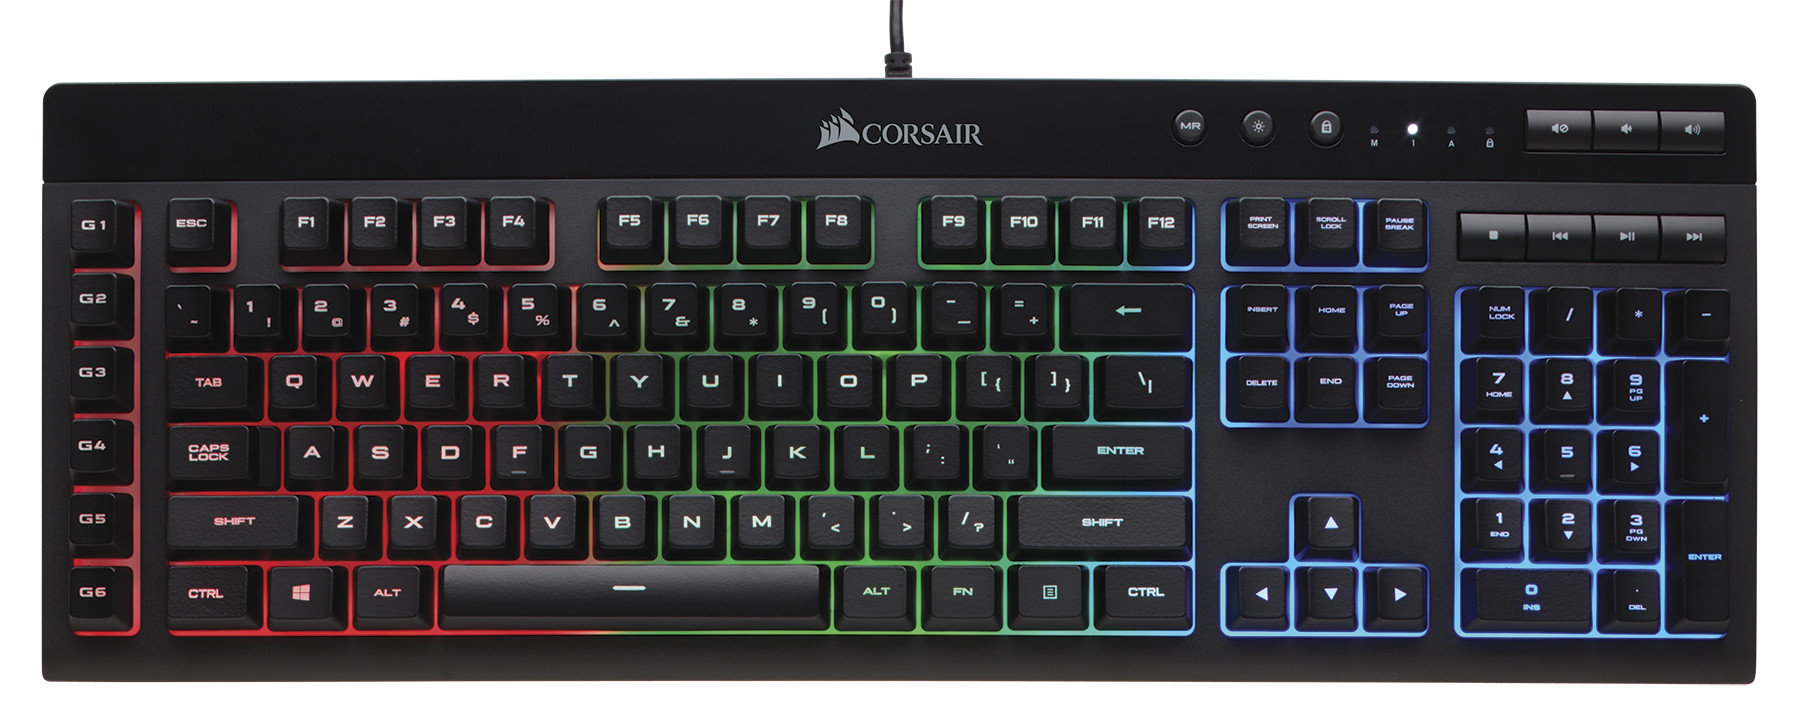 CORSAIR New HARPOON RGB Gaming Mouse and K55 Gaming Keyboard |